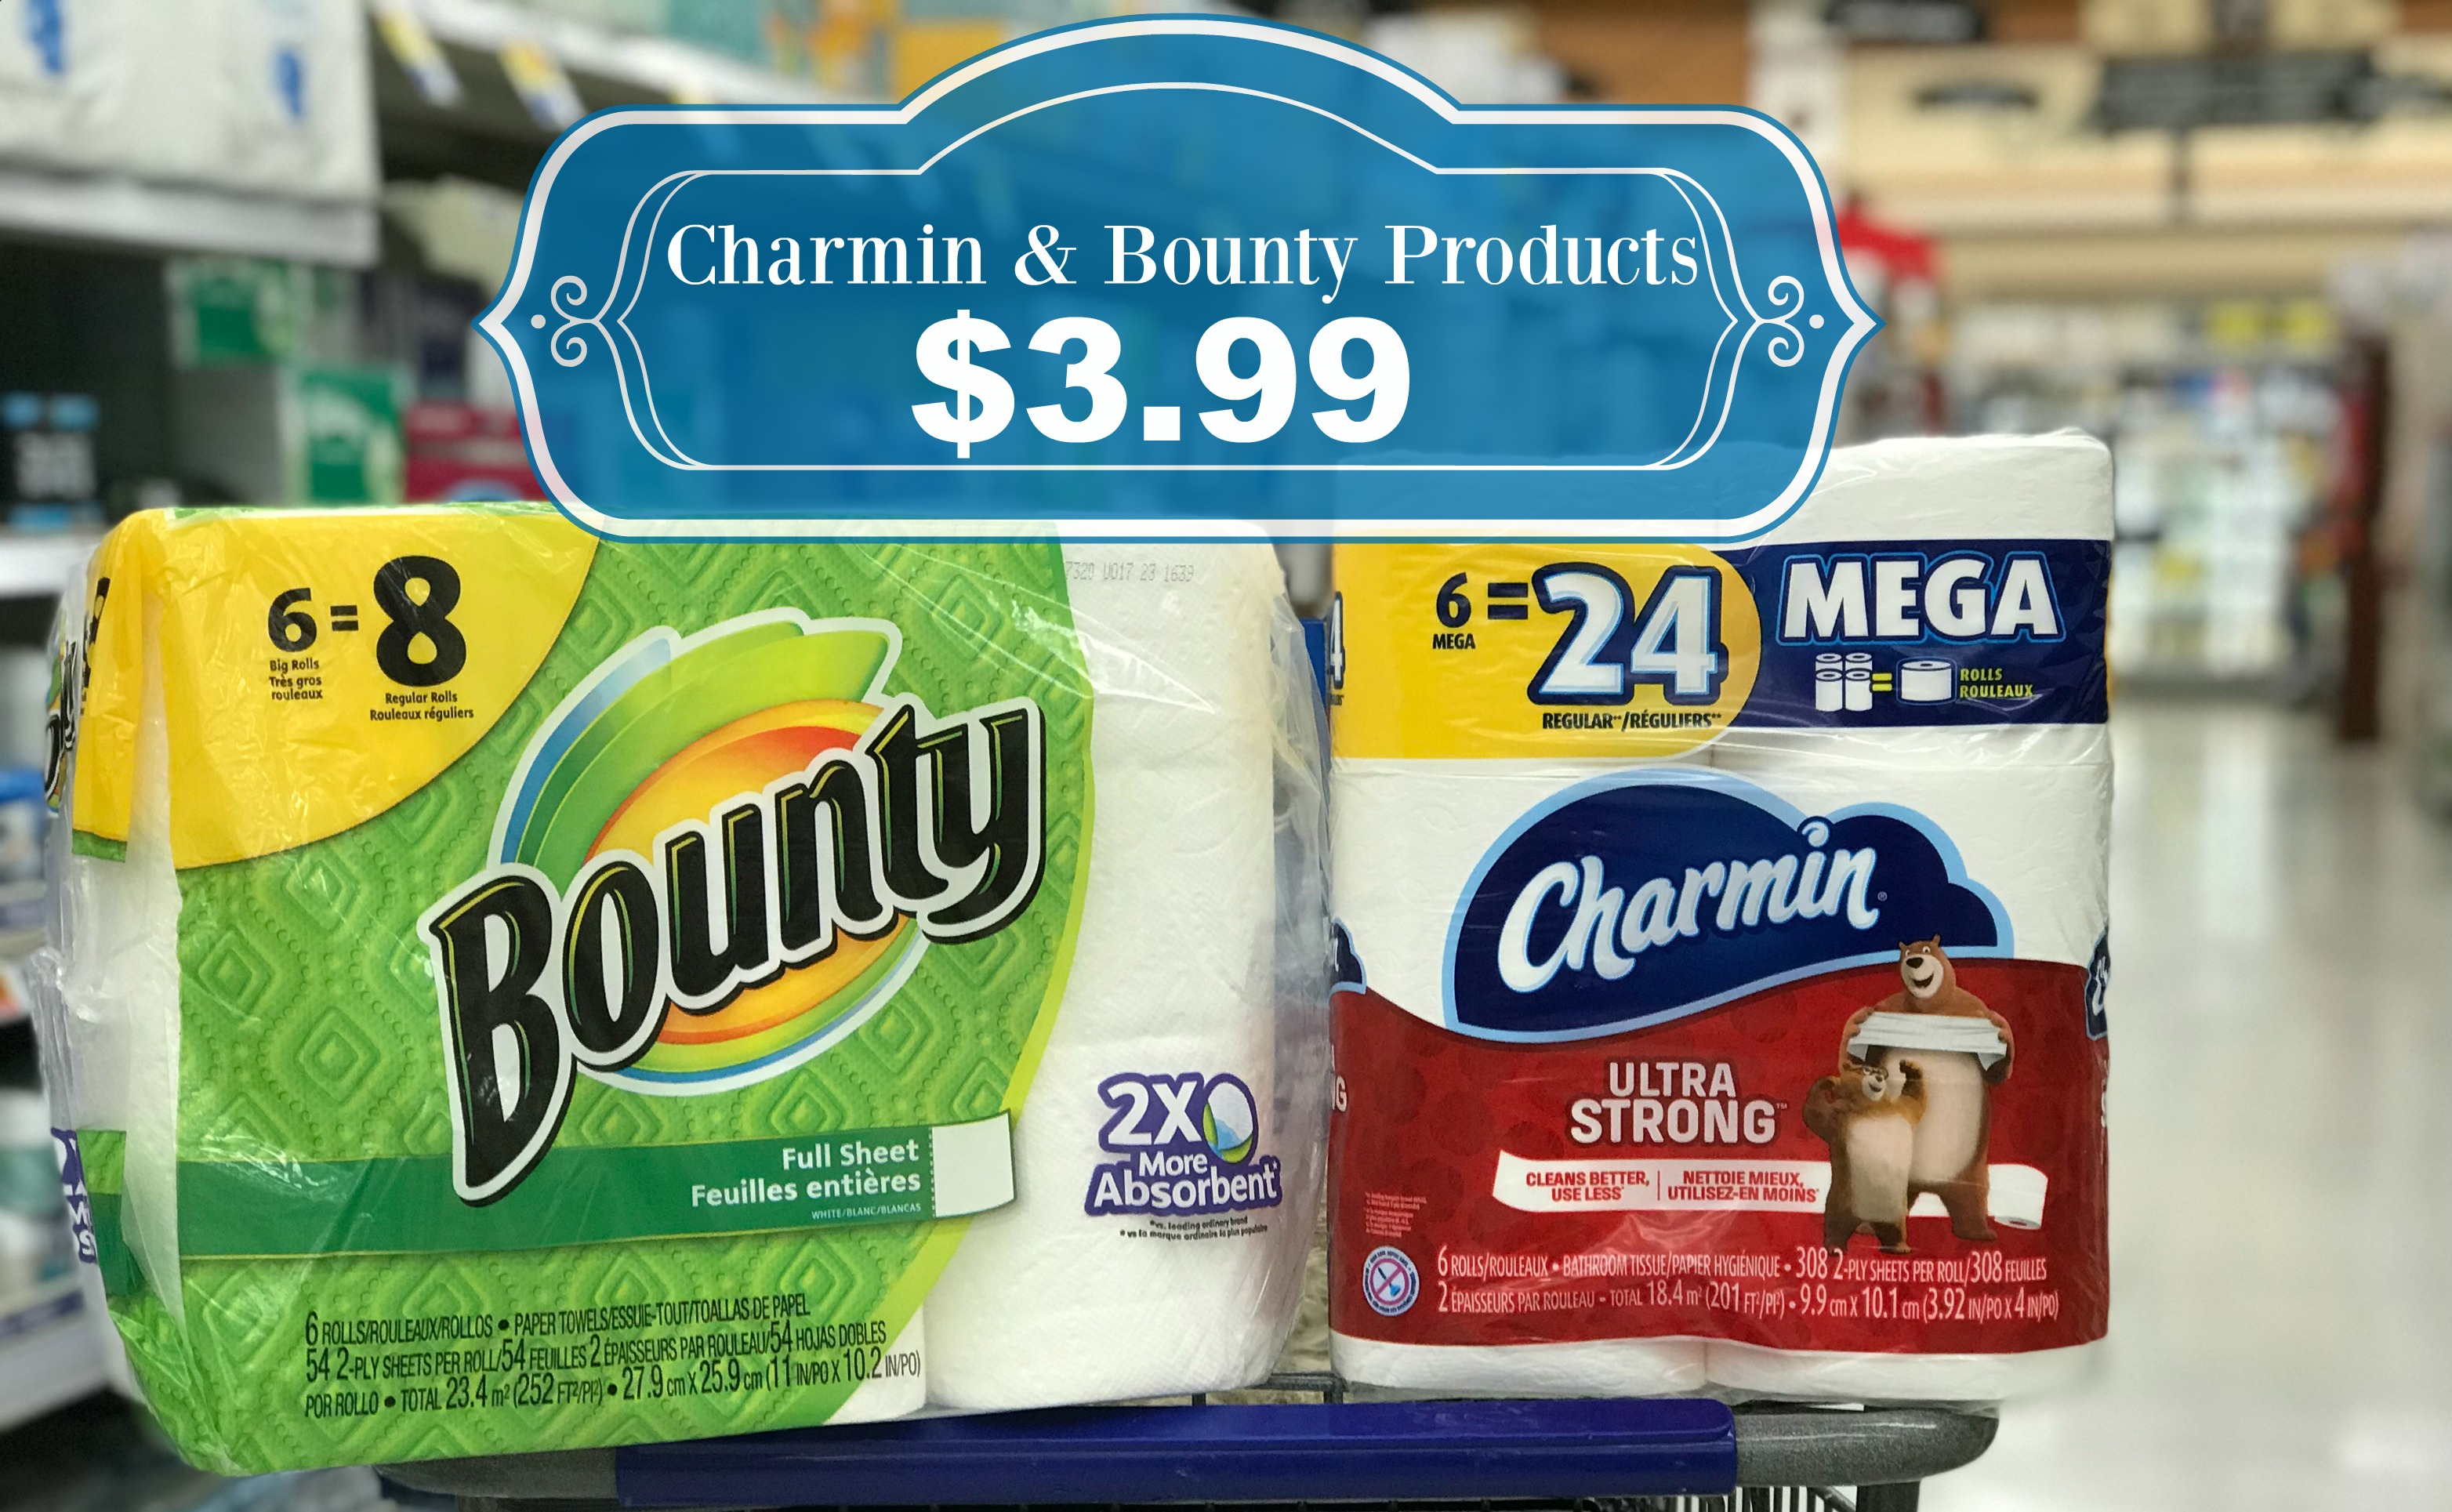 Charmin Ultra Soft Mega Roll Toilet Paper, 12 rolls - Kroger